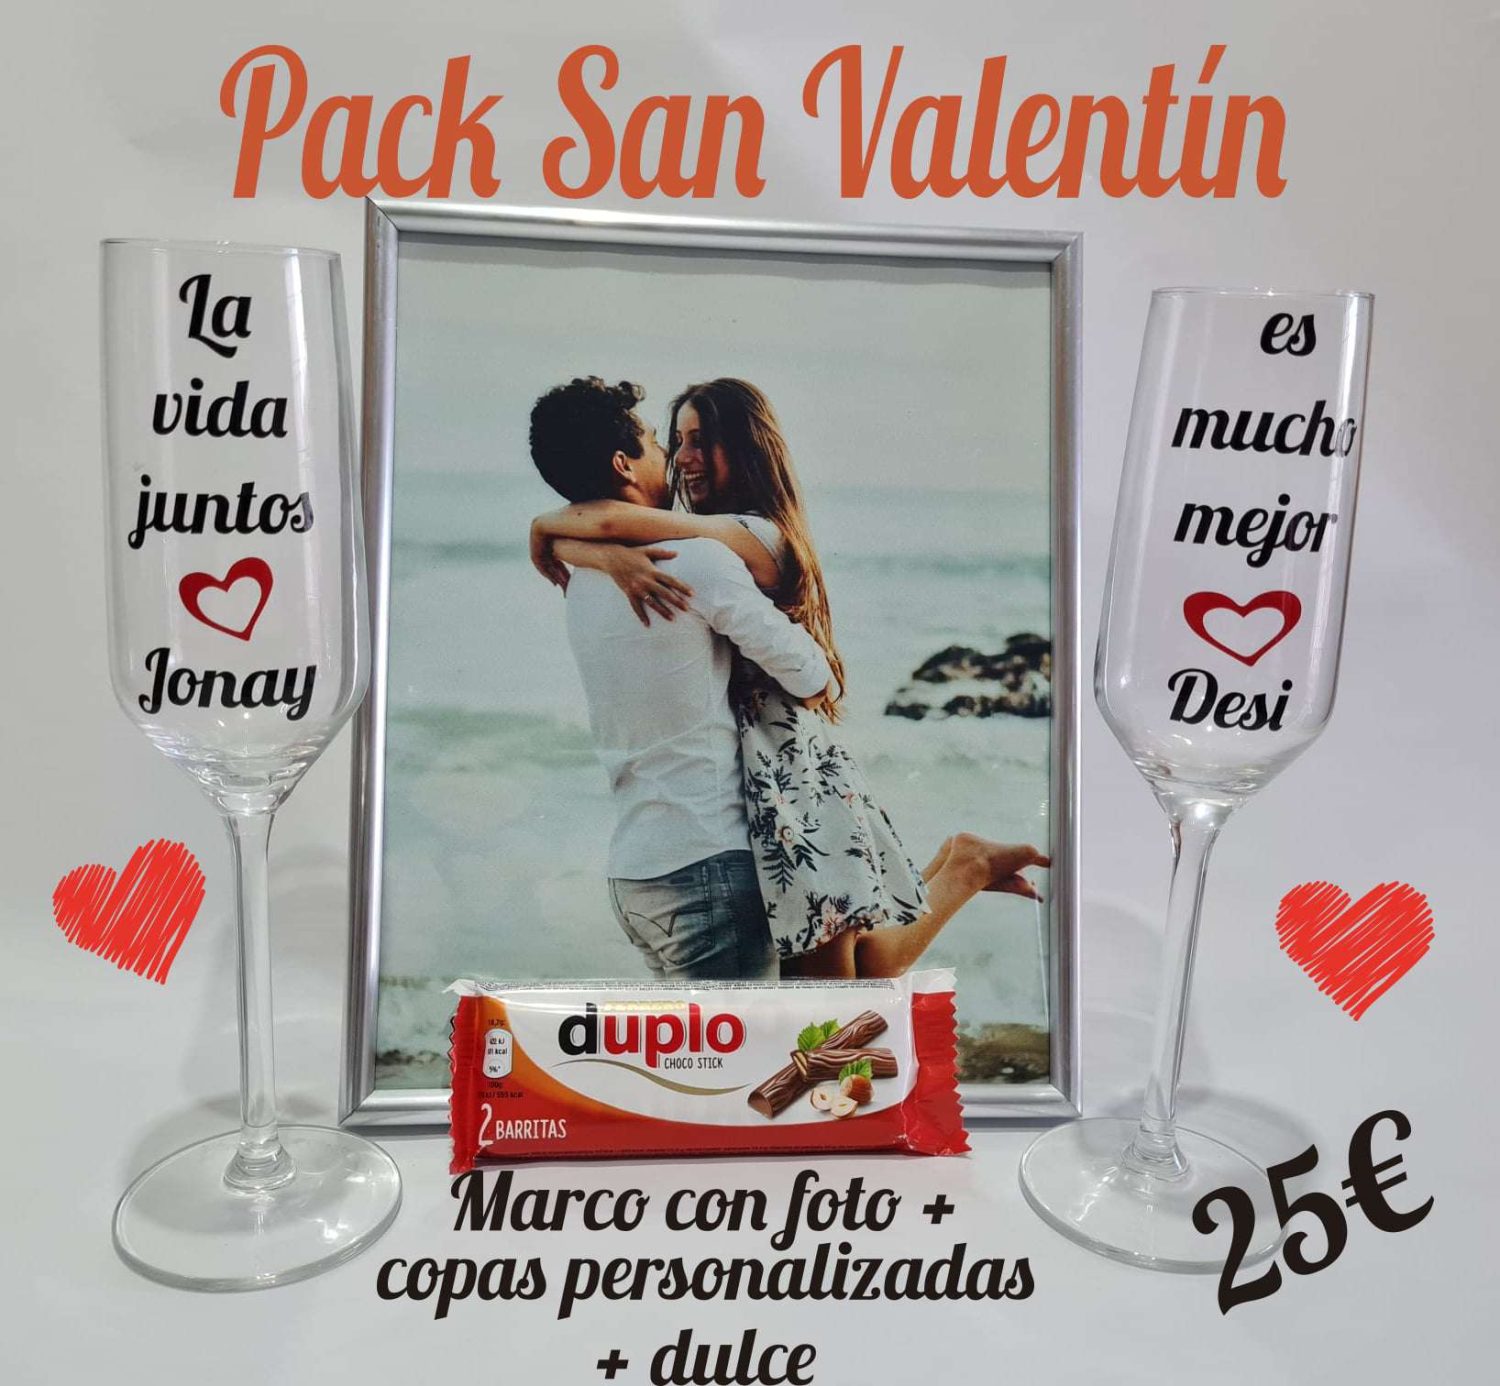 Pack San Valentin para el dia de los enamorados Ella y El